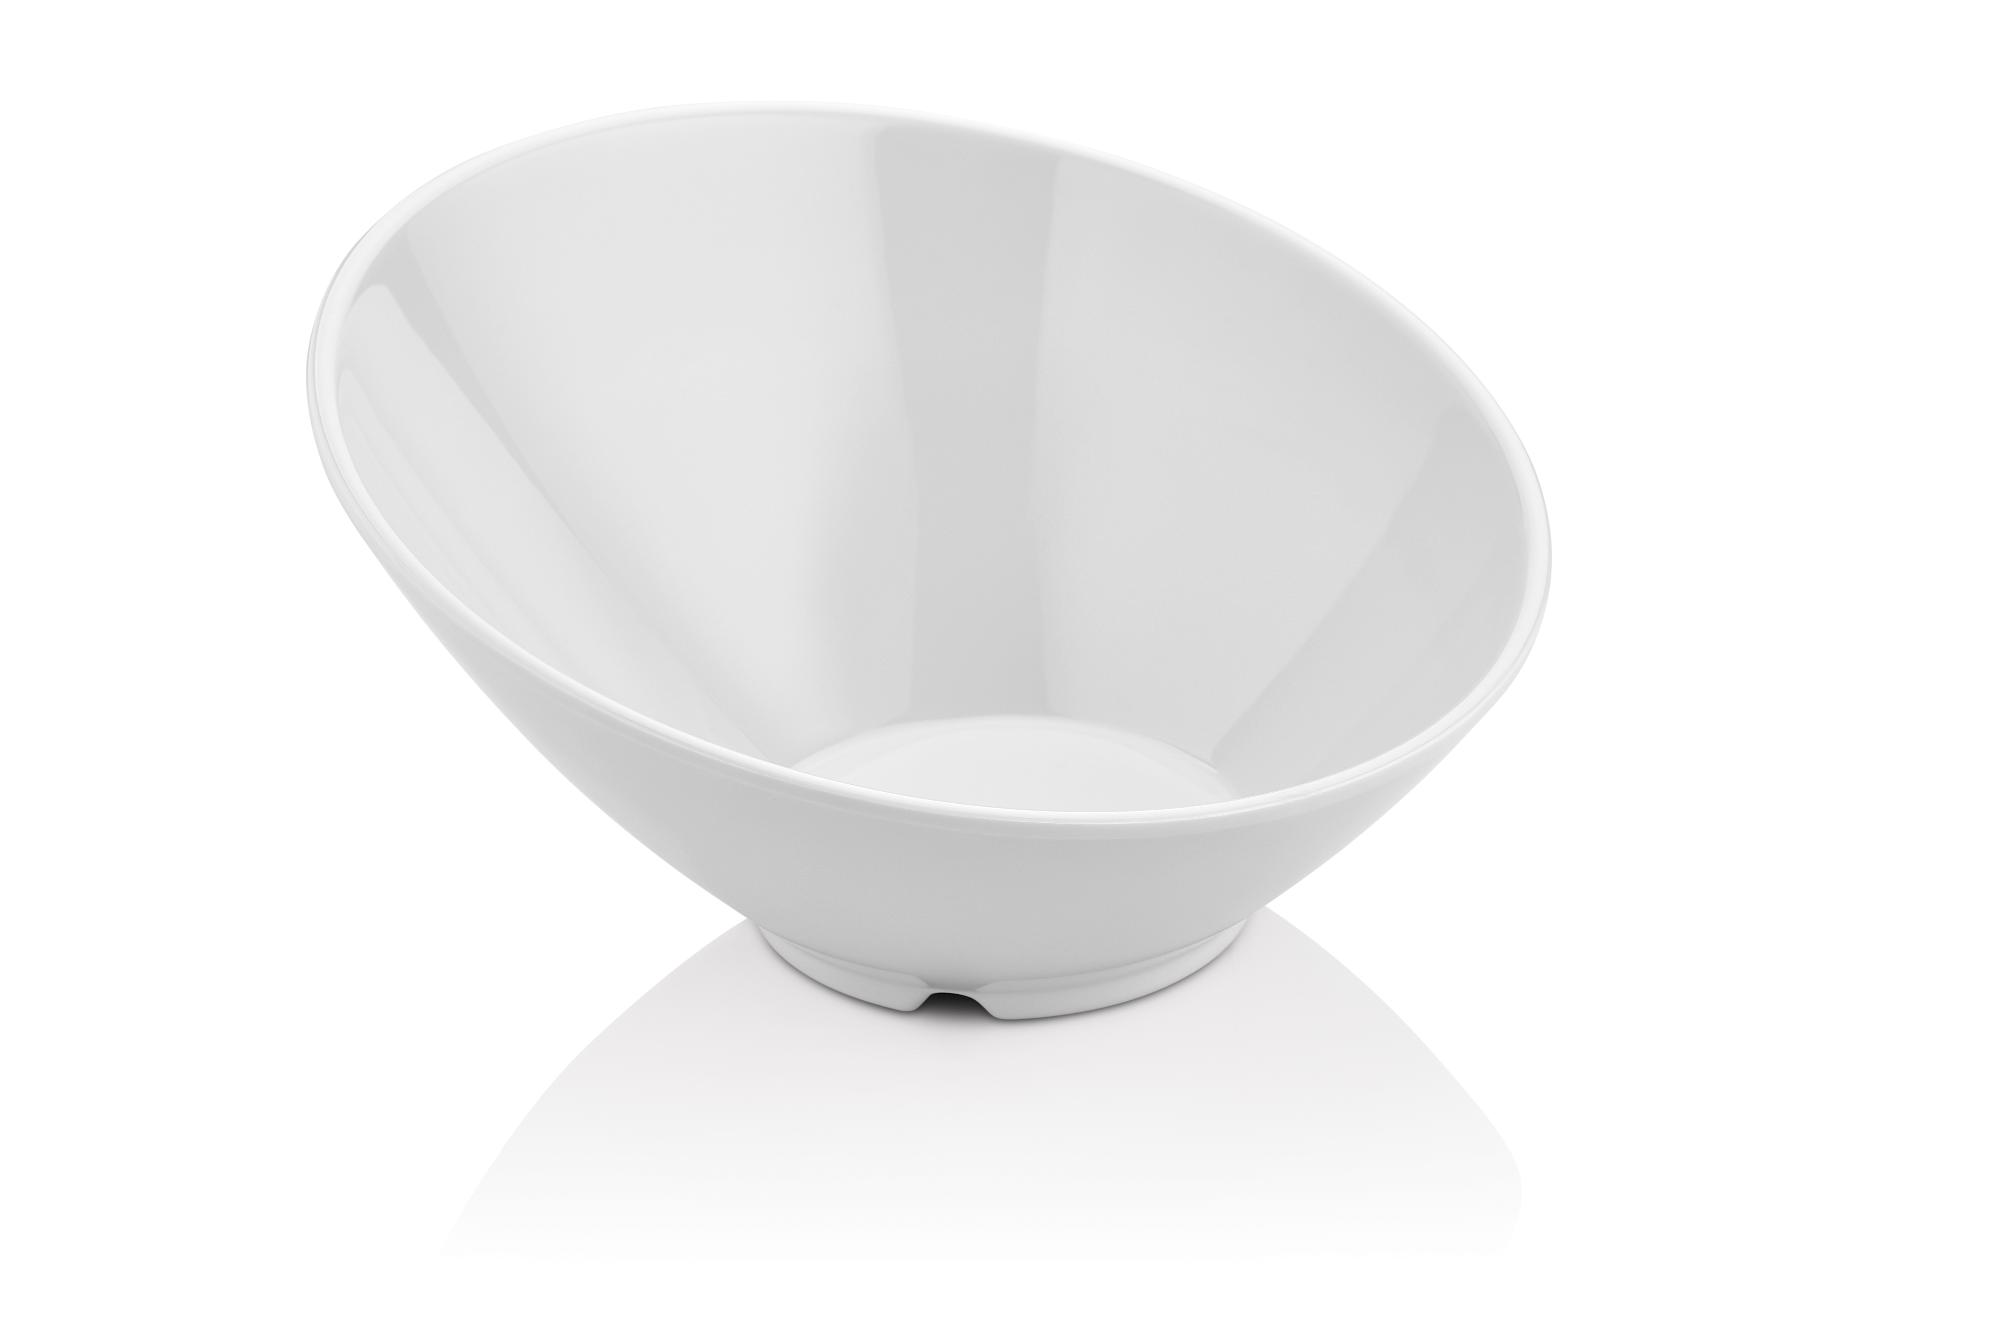 Slanted bowl made of melamine, white, 233x(h)125mm